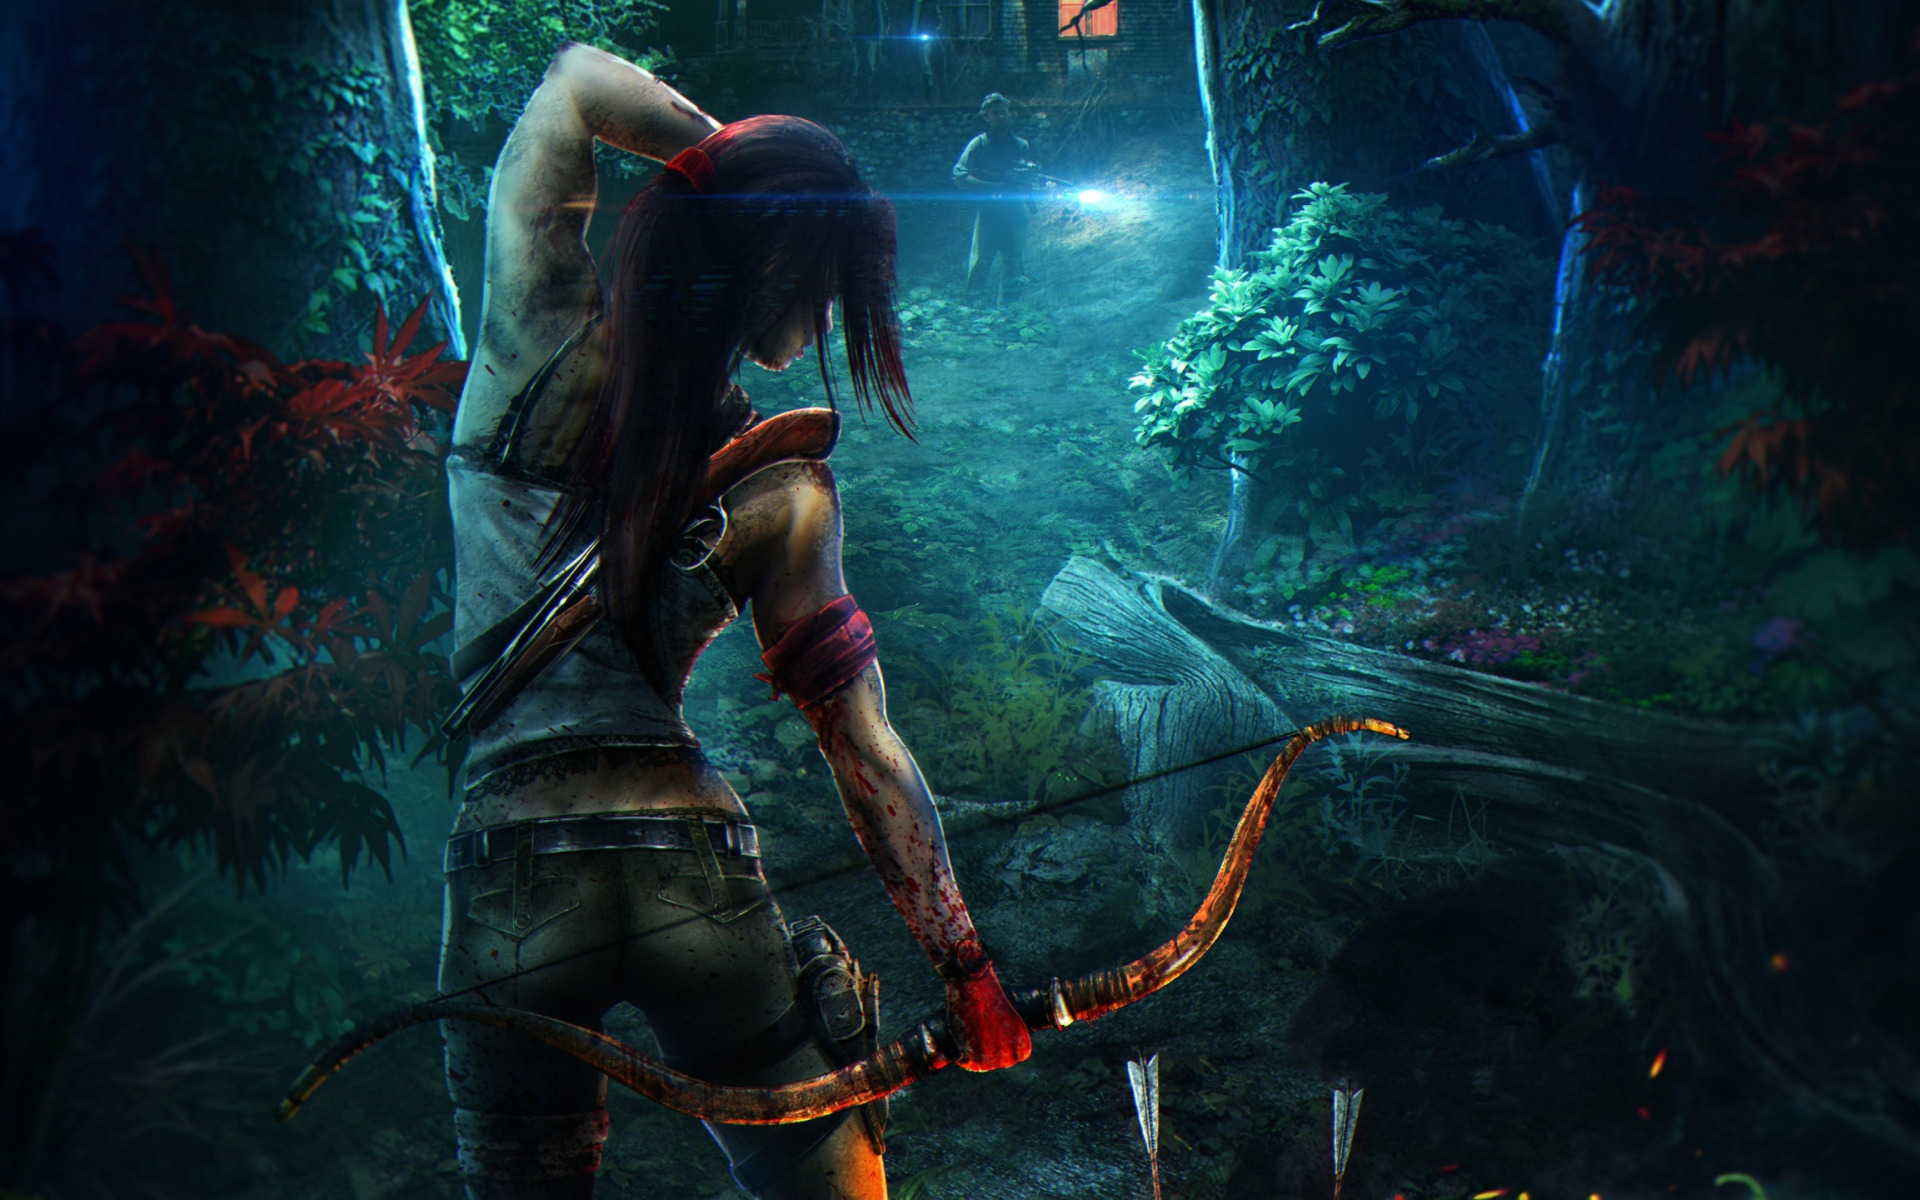 Описание и рекомендации к прохождению, для получения всех достижений. for Tomb Raider